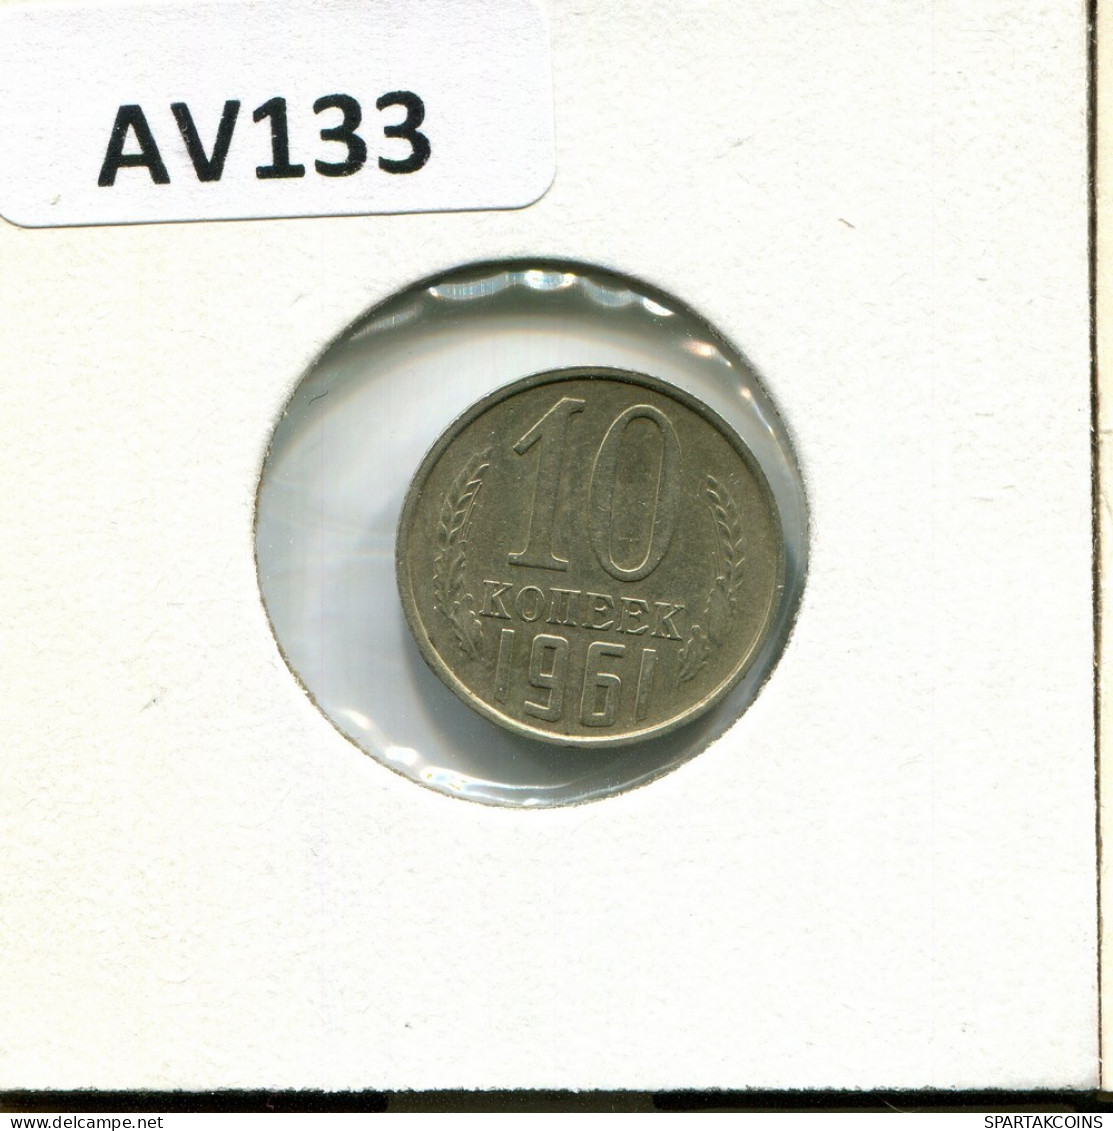 10 KOPEKS 1961 RUSSLAND RUSSIA USSR Münze #AV133.D.A - Russia